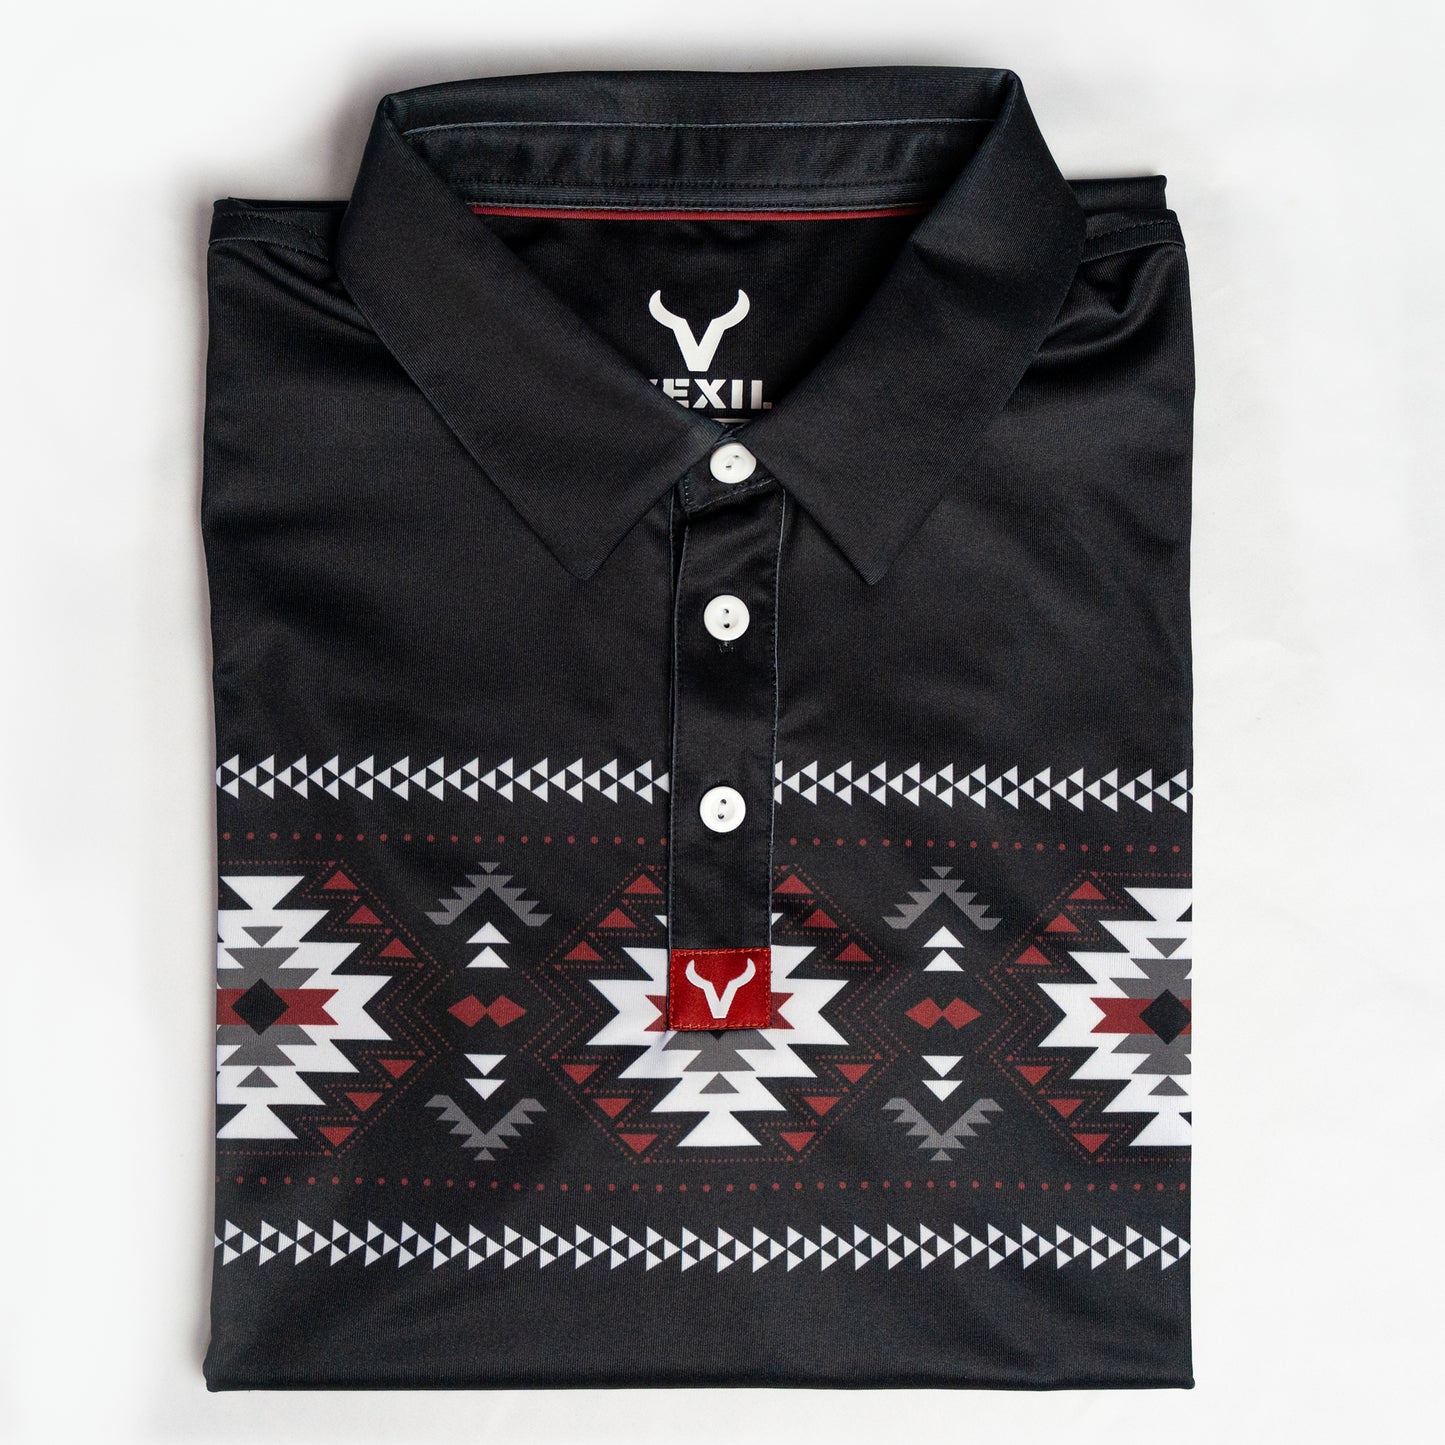 Vexil Brand - Polo - Aztec - Black